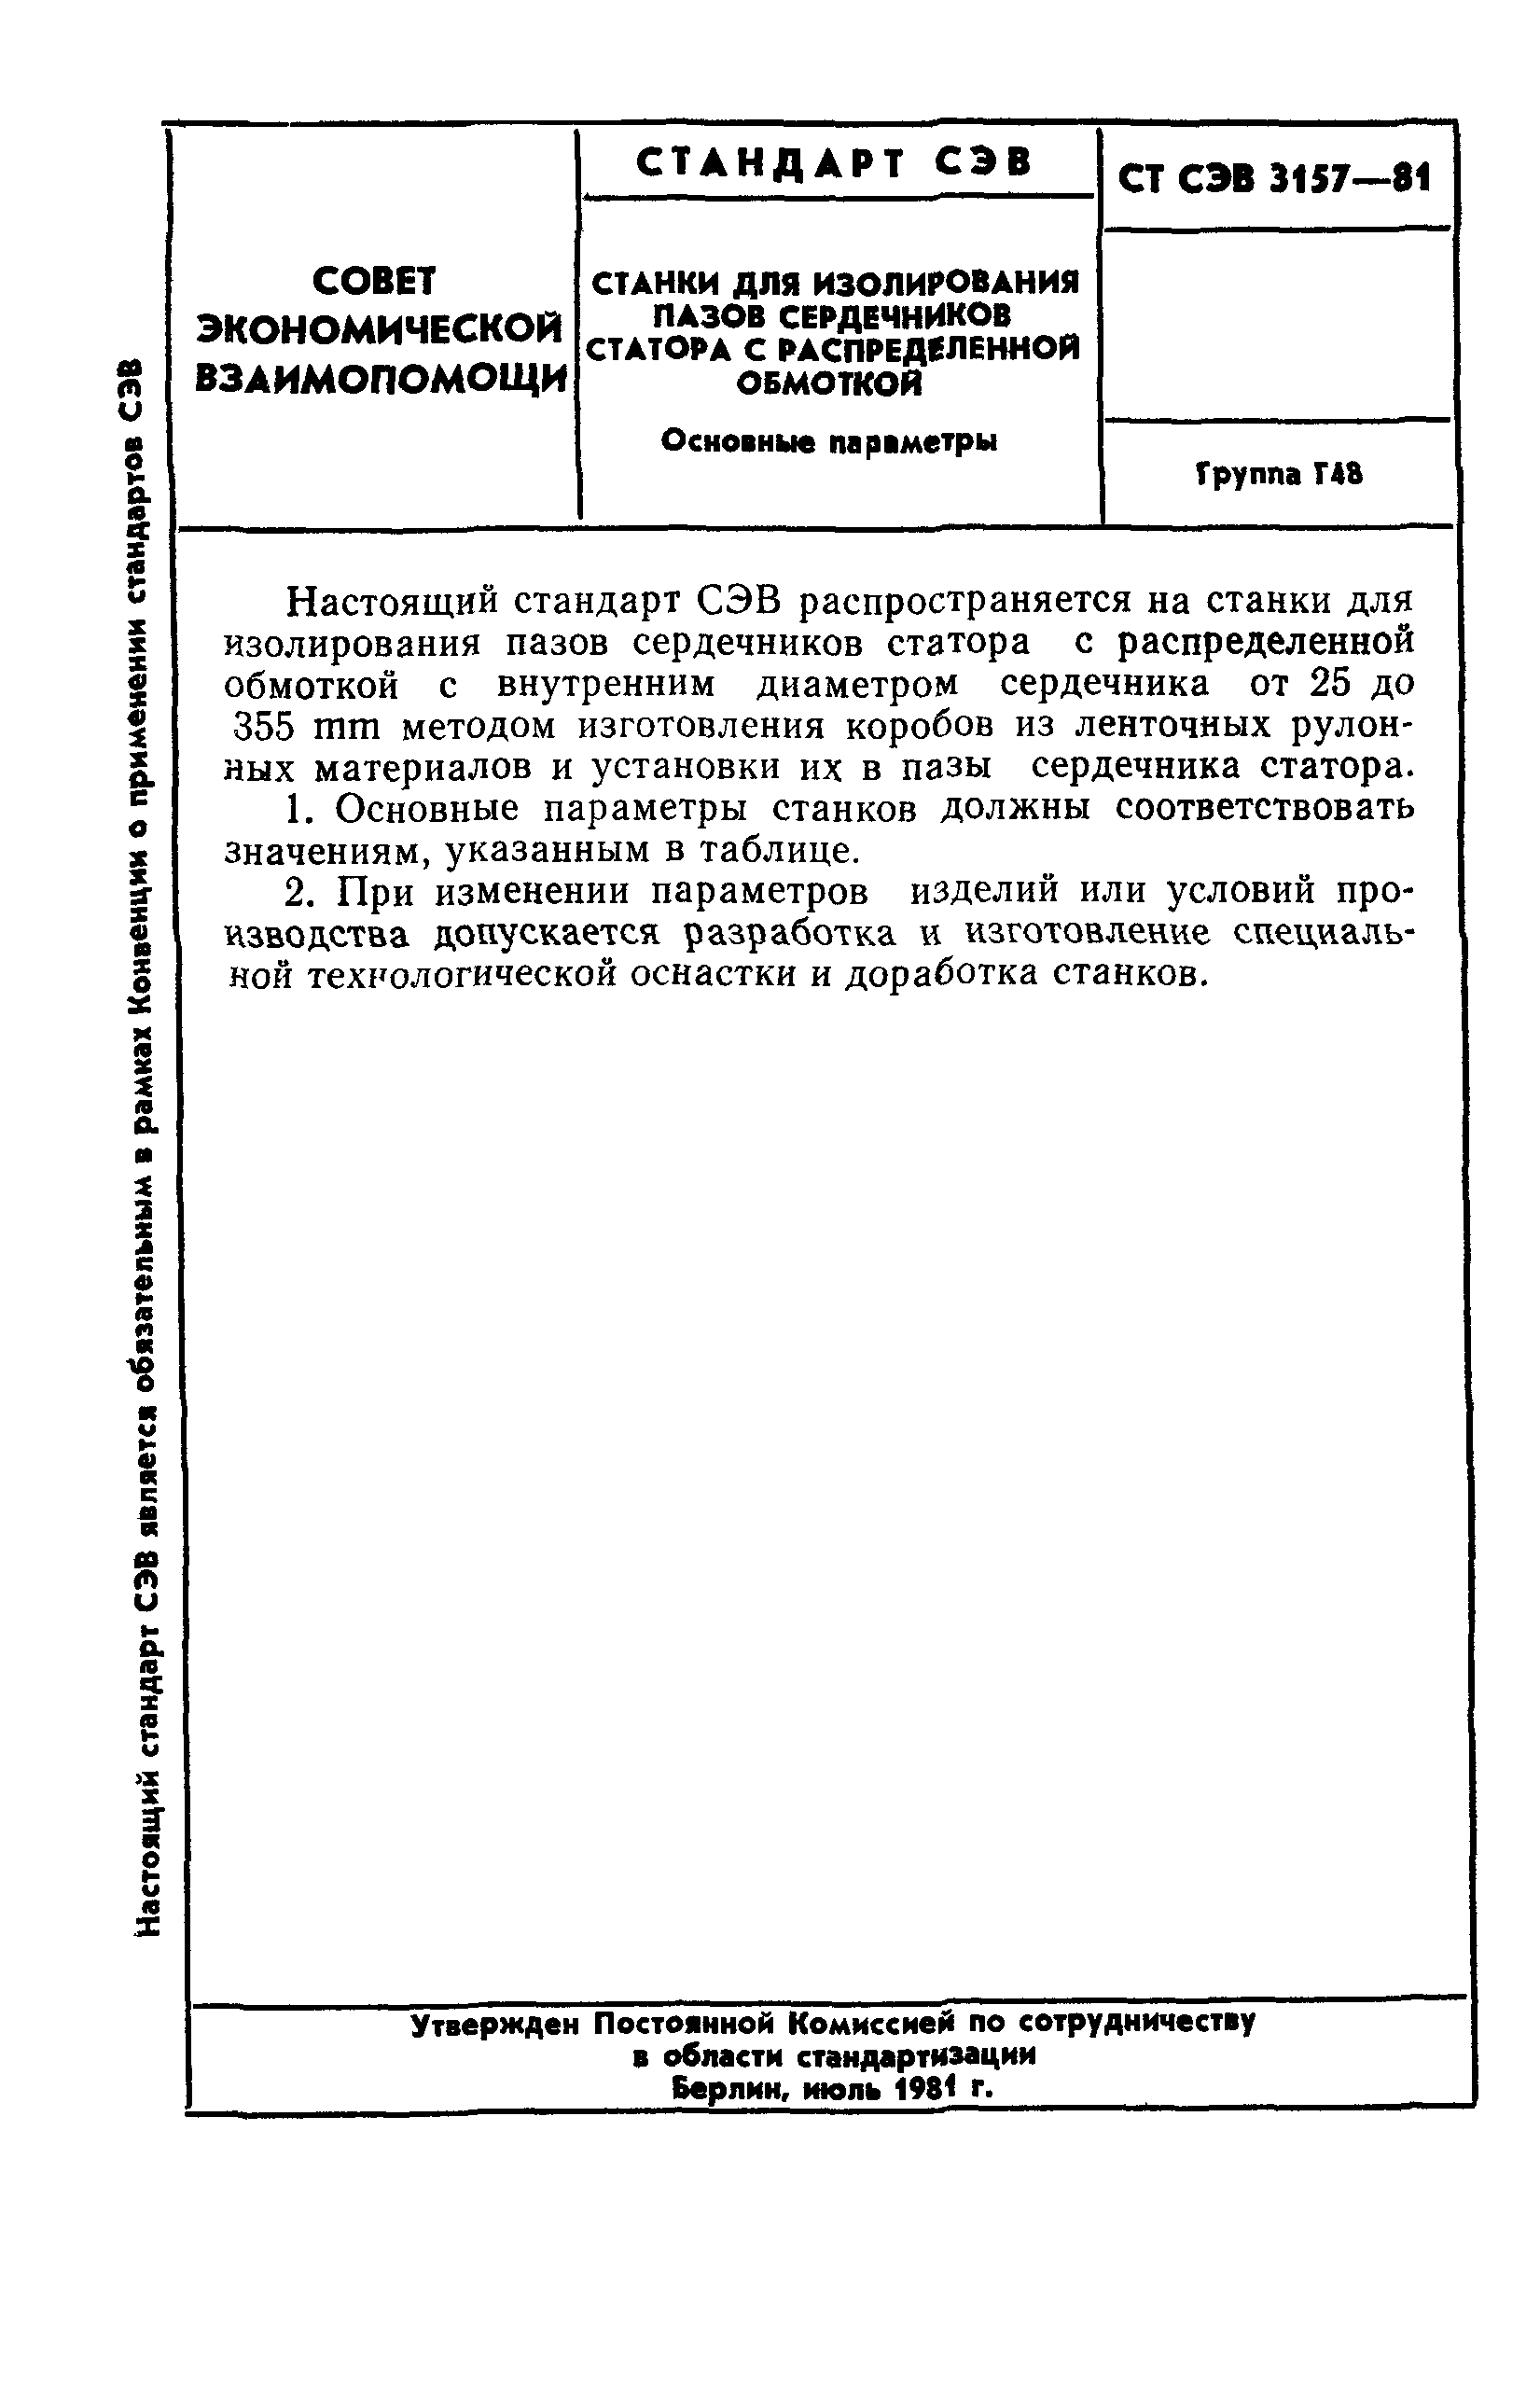 СТ СЭВ 3157-81